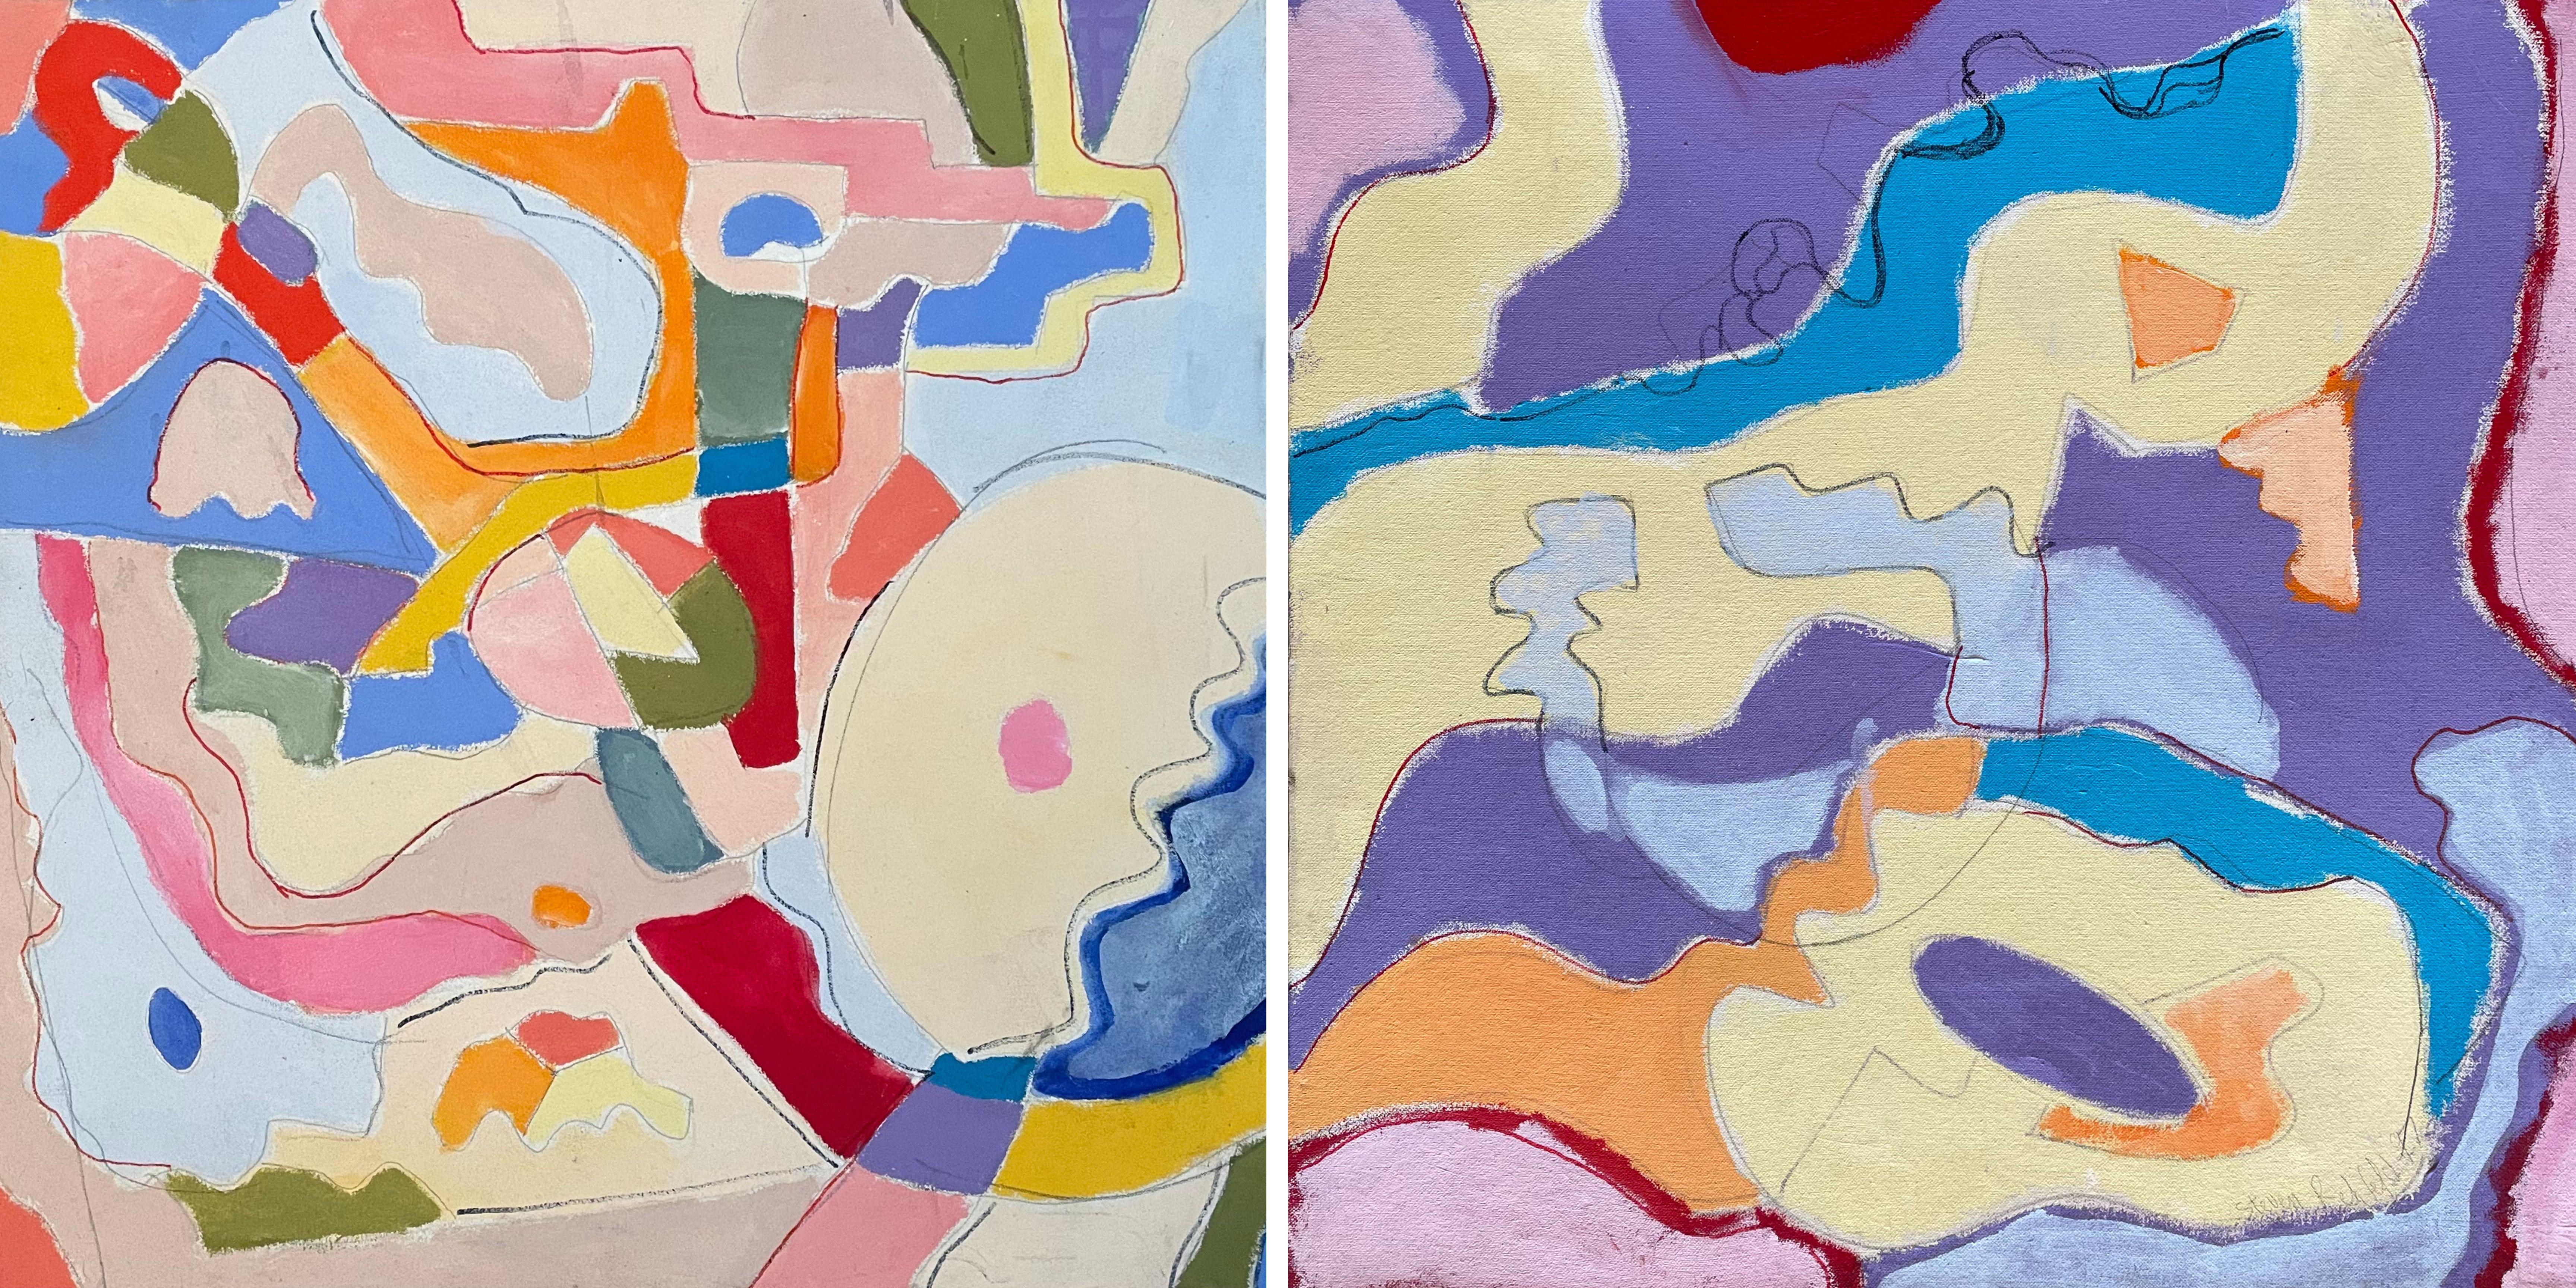 Steven H. Rehfelds 24" x 48" großes Diptychon "Coastal" fesselt den Betrachter mit seinem meisterhaften Tanz der Farben und Formen. Jede Tafel stellt eine abstrakte, aber harmonische Darstellung der unzähligen Landschaften der Natur dar. In der